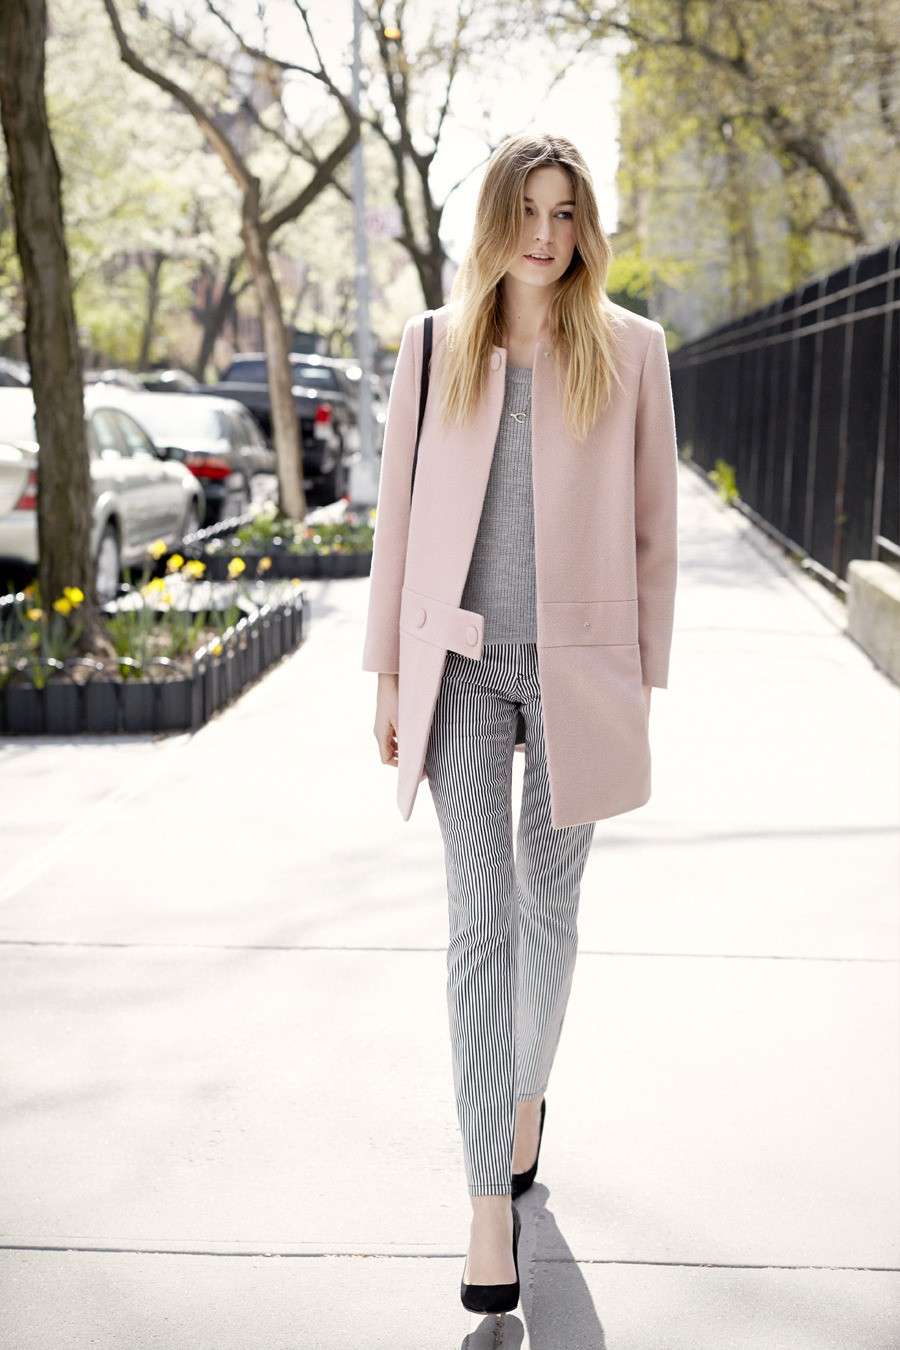 Outfit per abbinare il cappotto rosa con stile